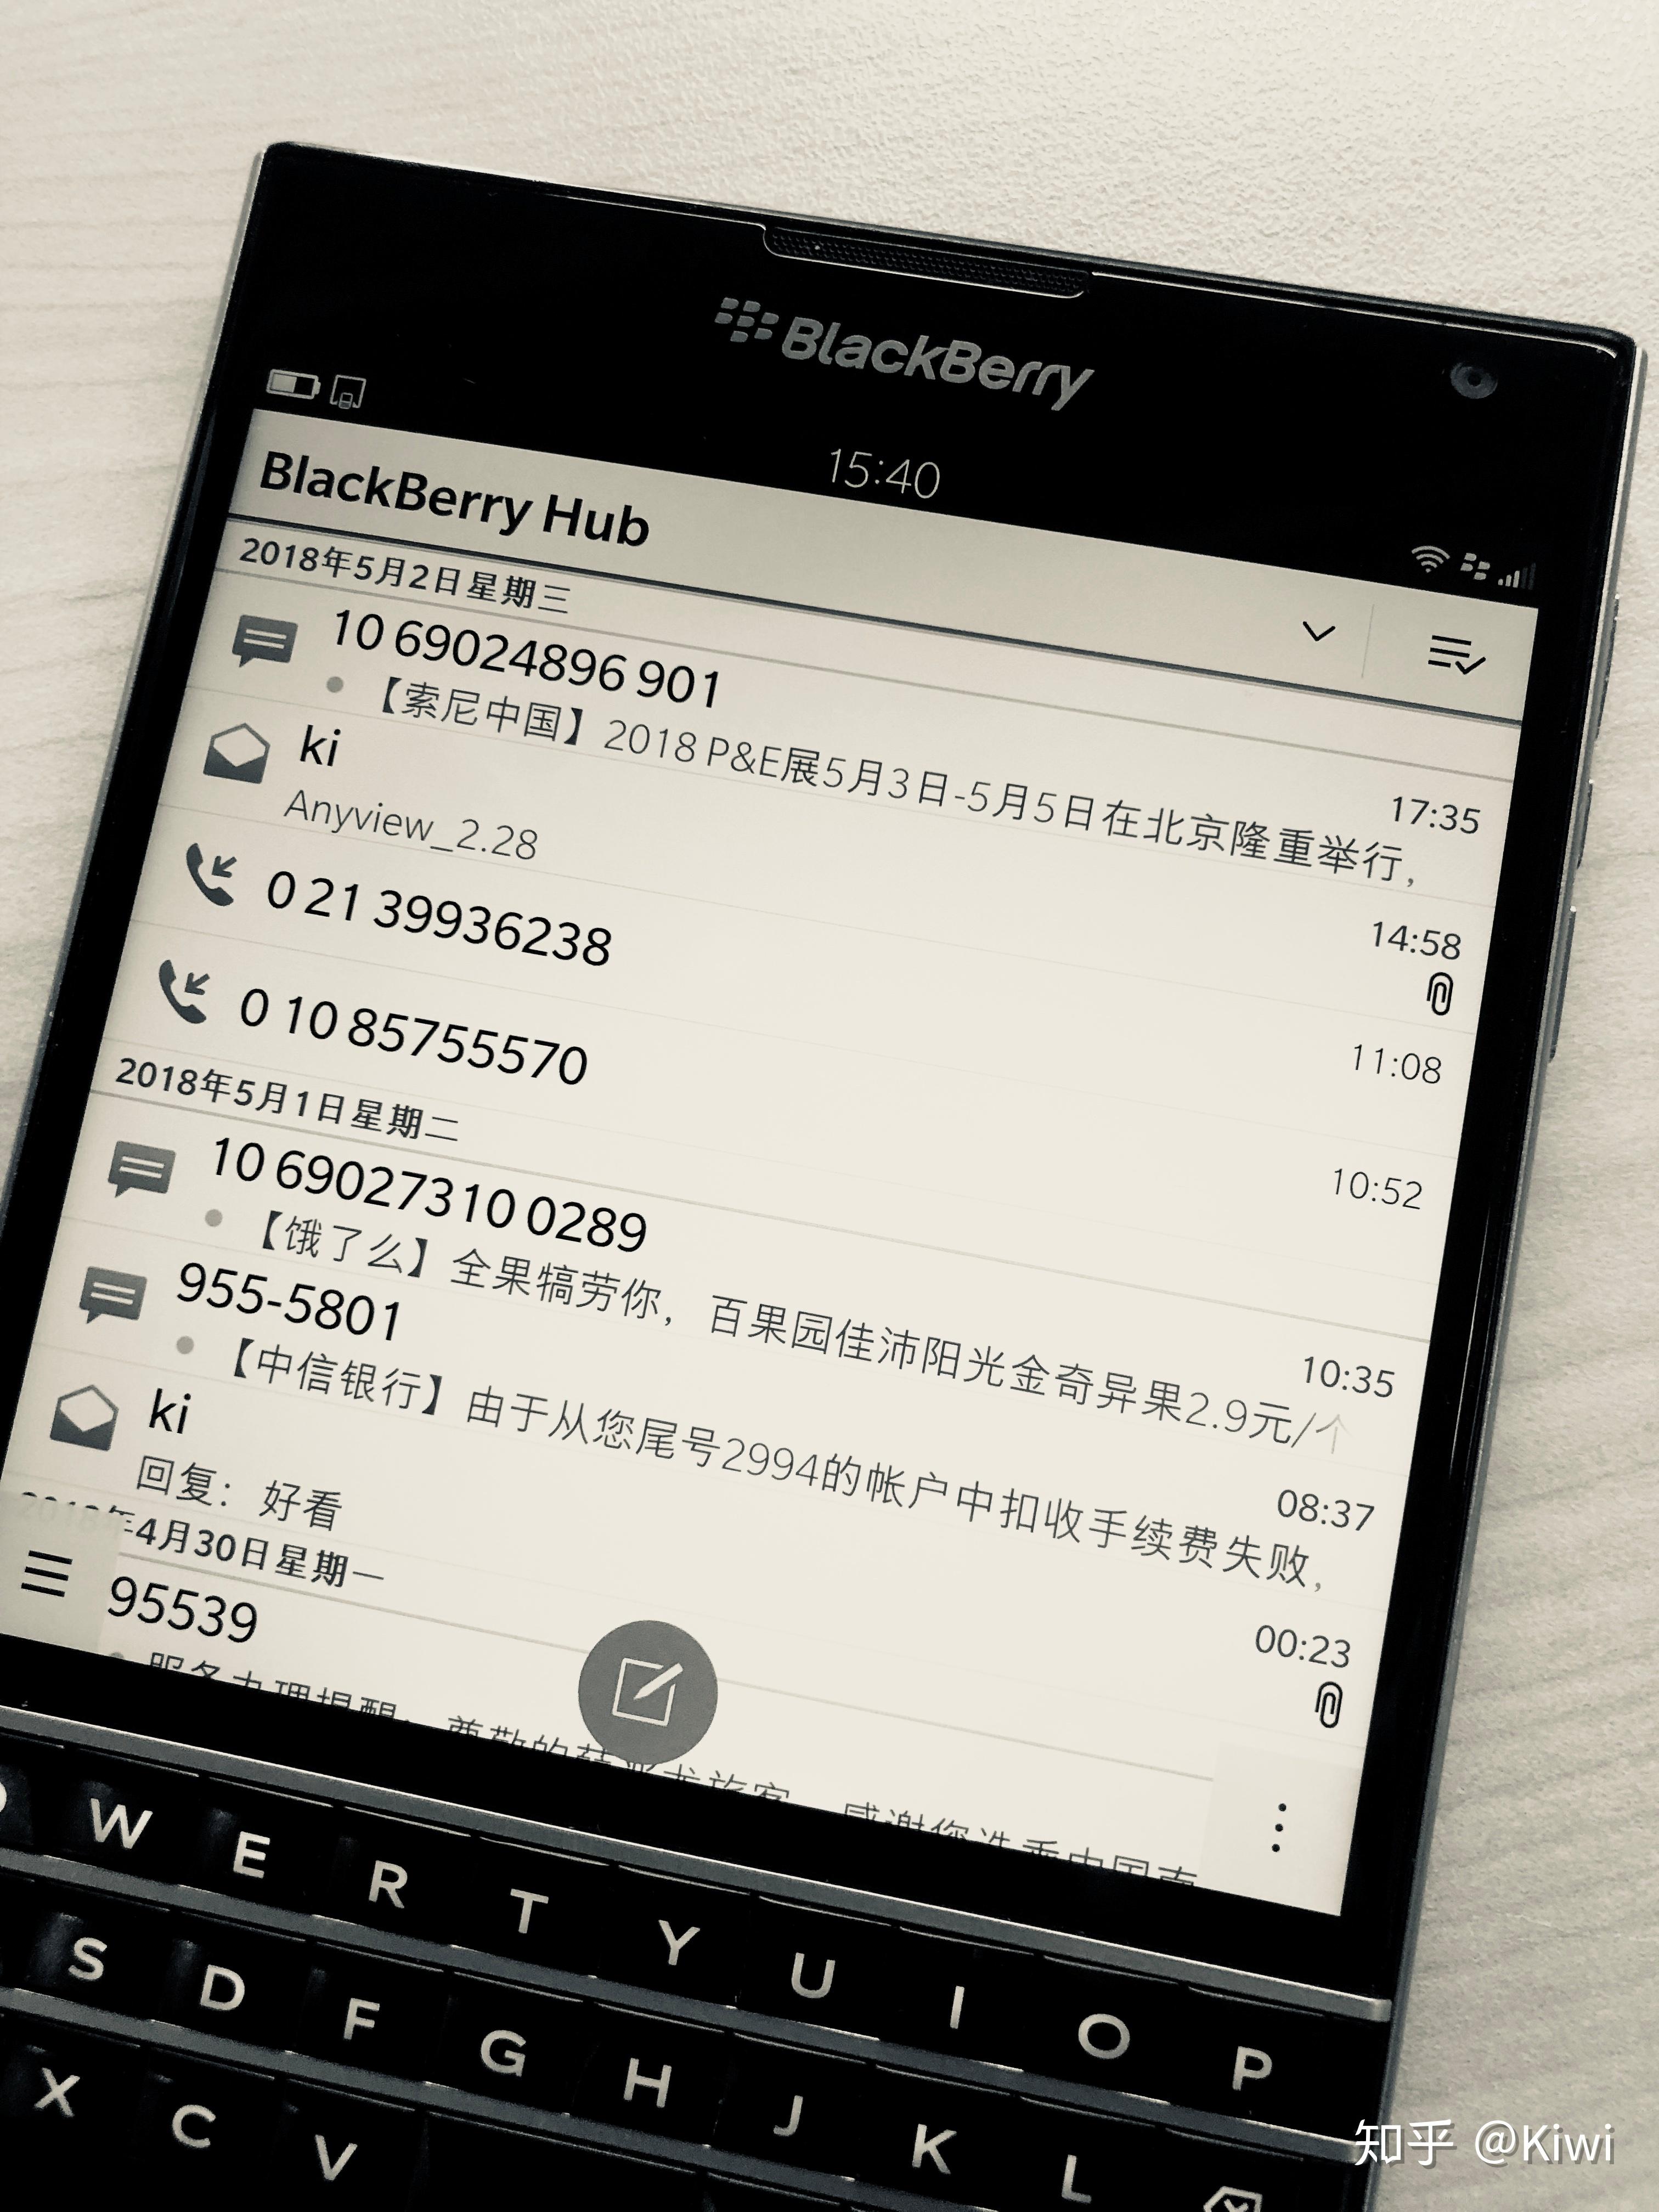 купить BlackBerry Passport | BlackBerry в России